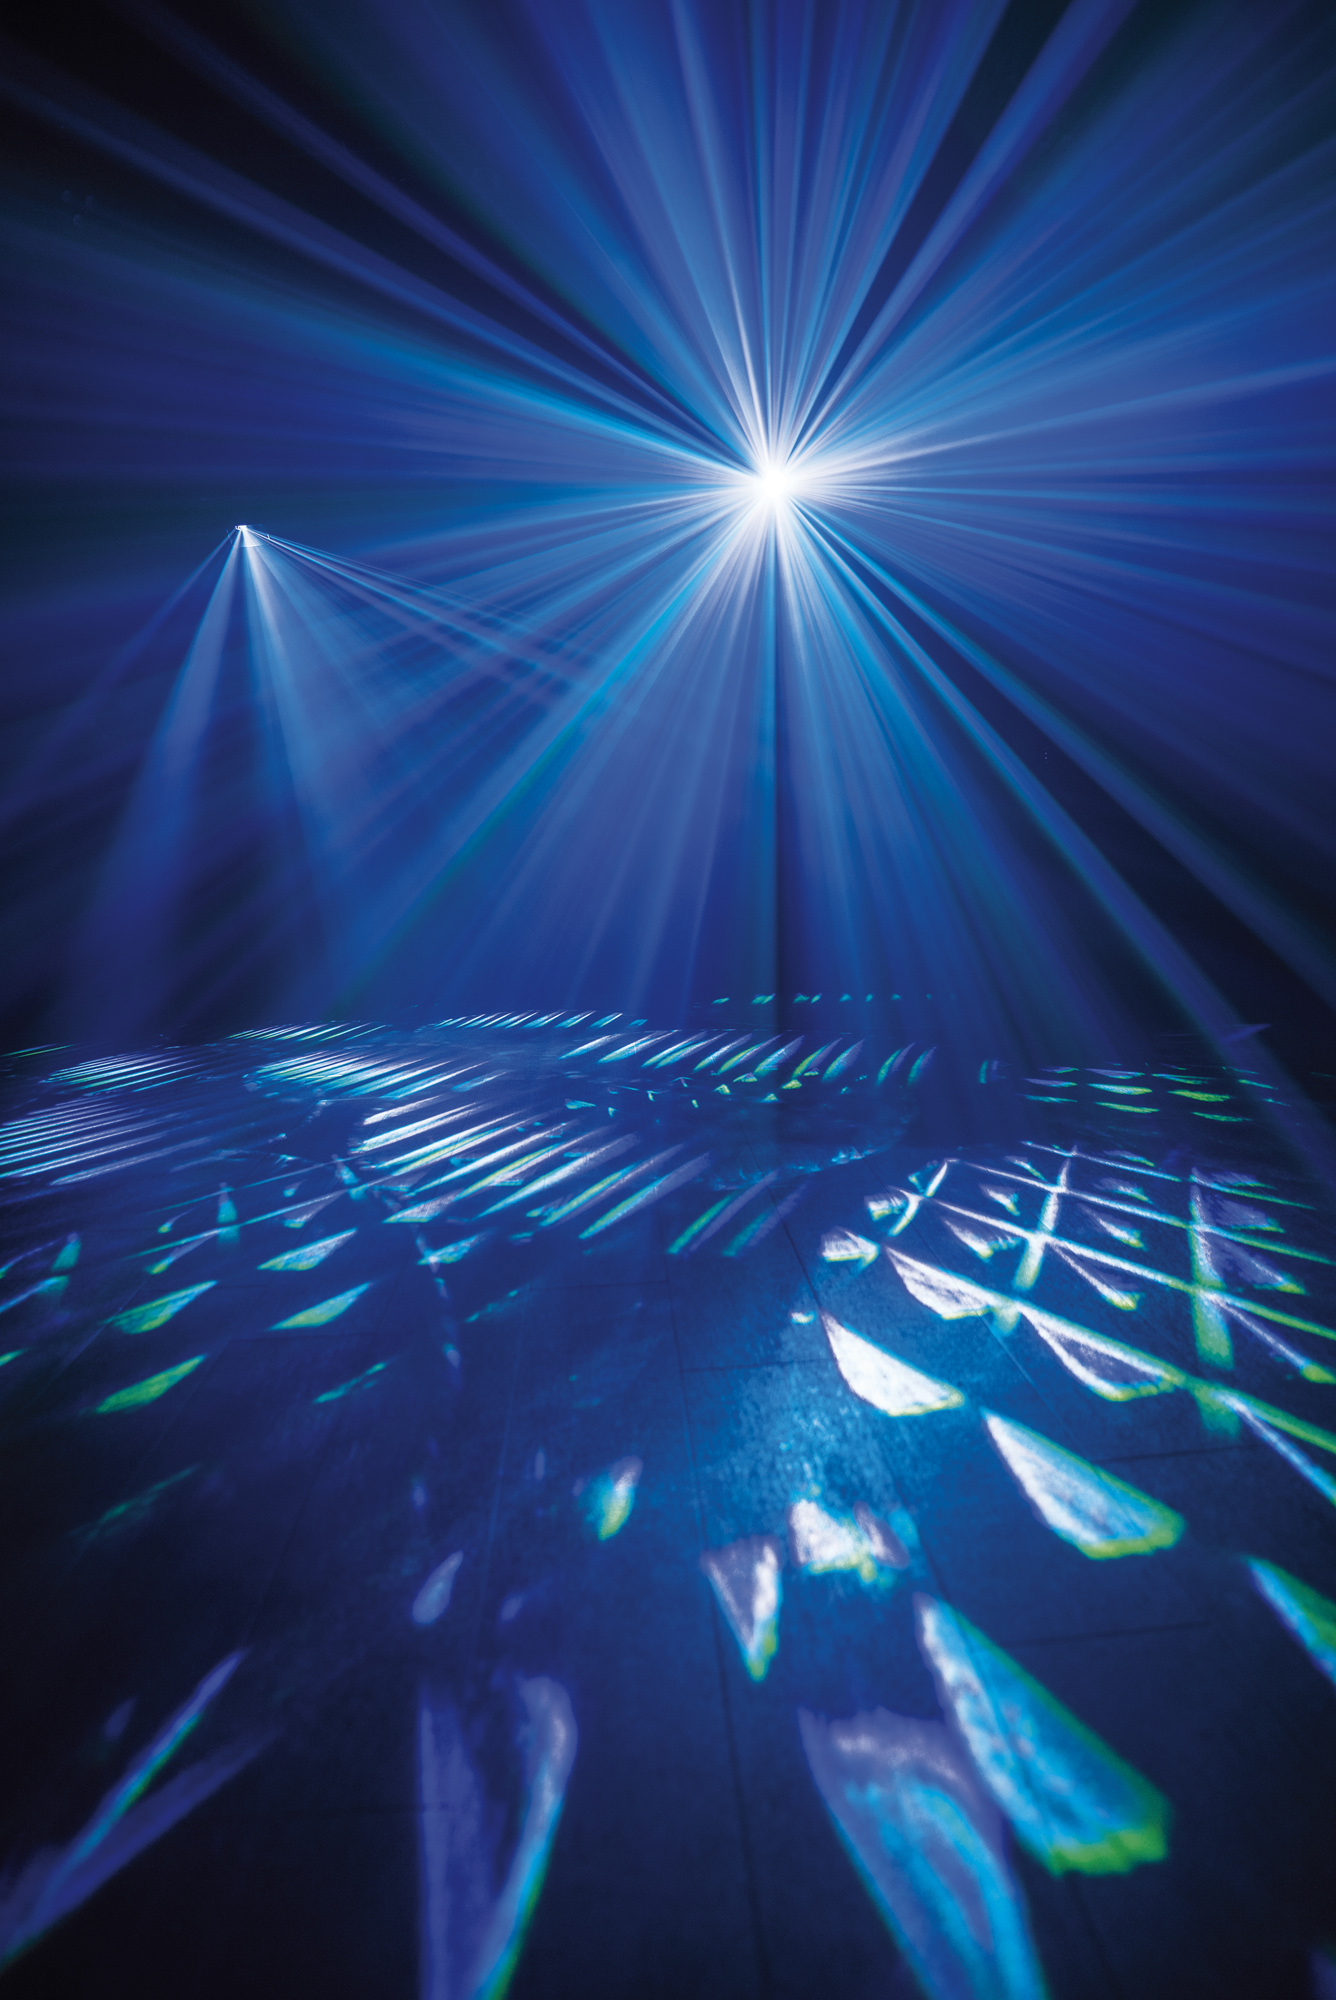 Showtec Club Par Dizzy 3/8 3 x 8 W RGBUV LED Par